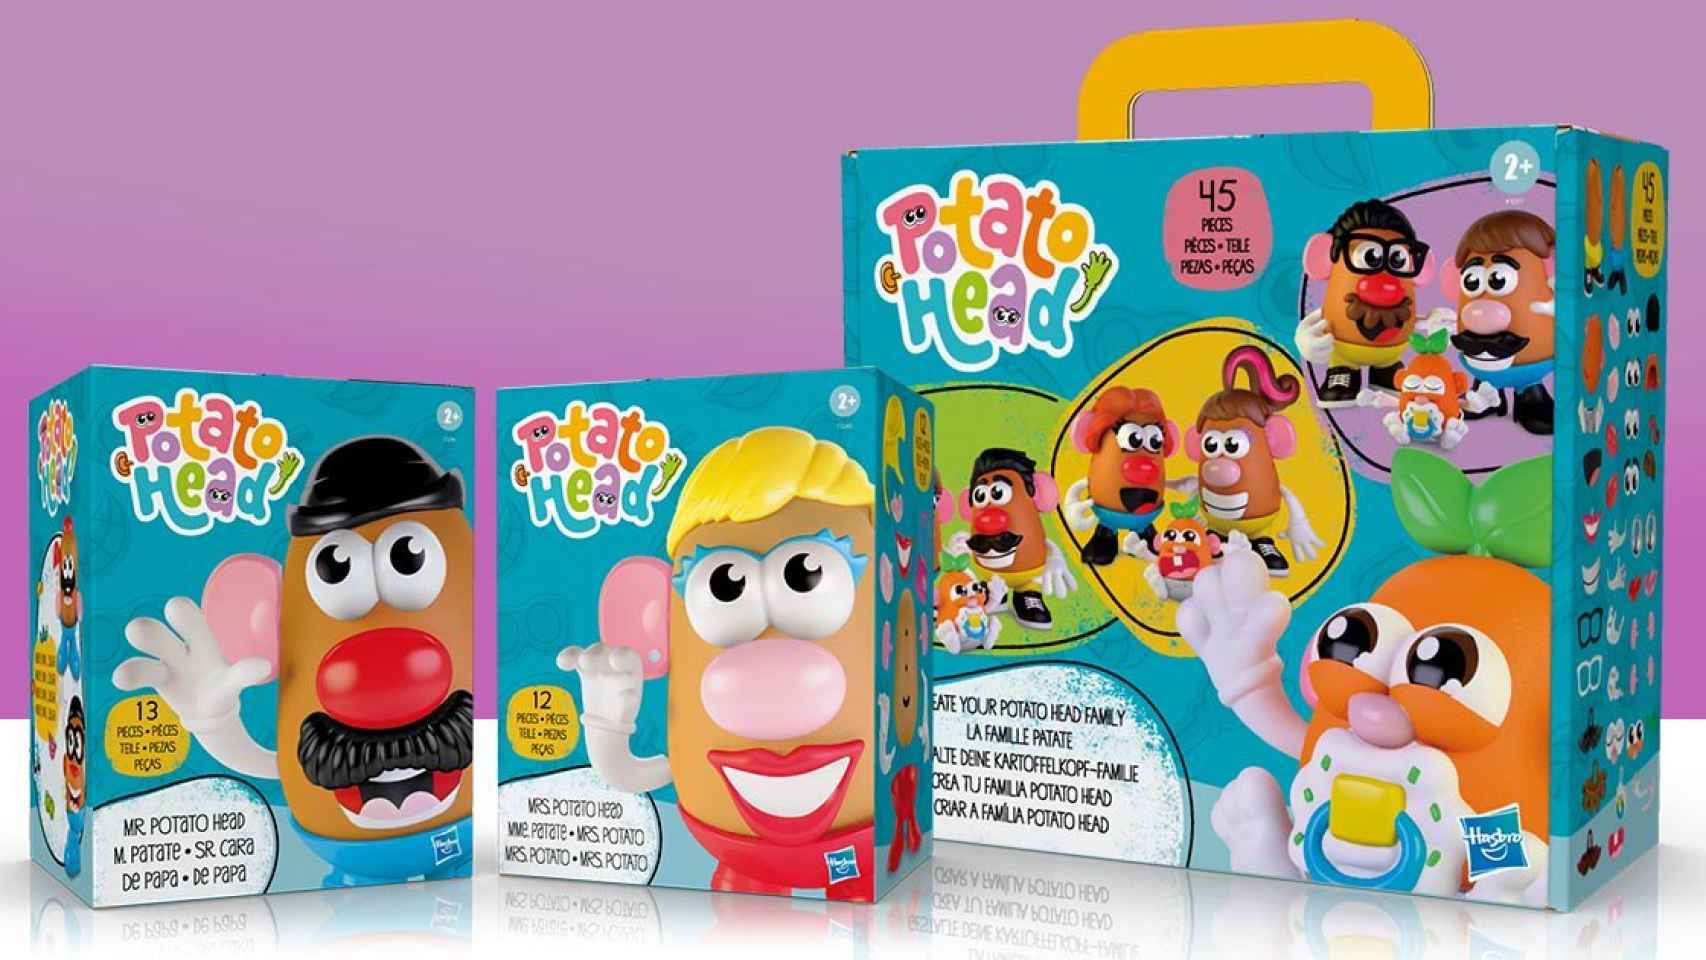 El nuevo pack que lanzará en otoño la compañía Hasbro de 'Potato Head', ya sin el 'Mr.'.